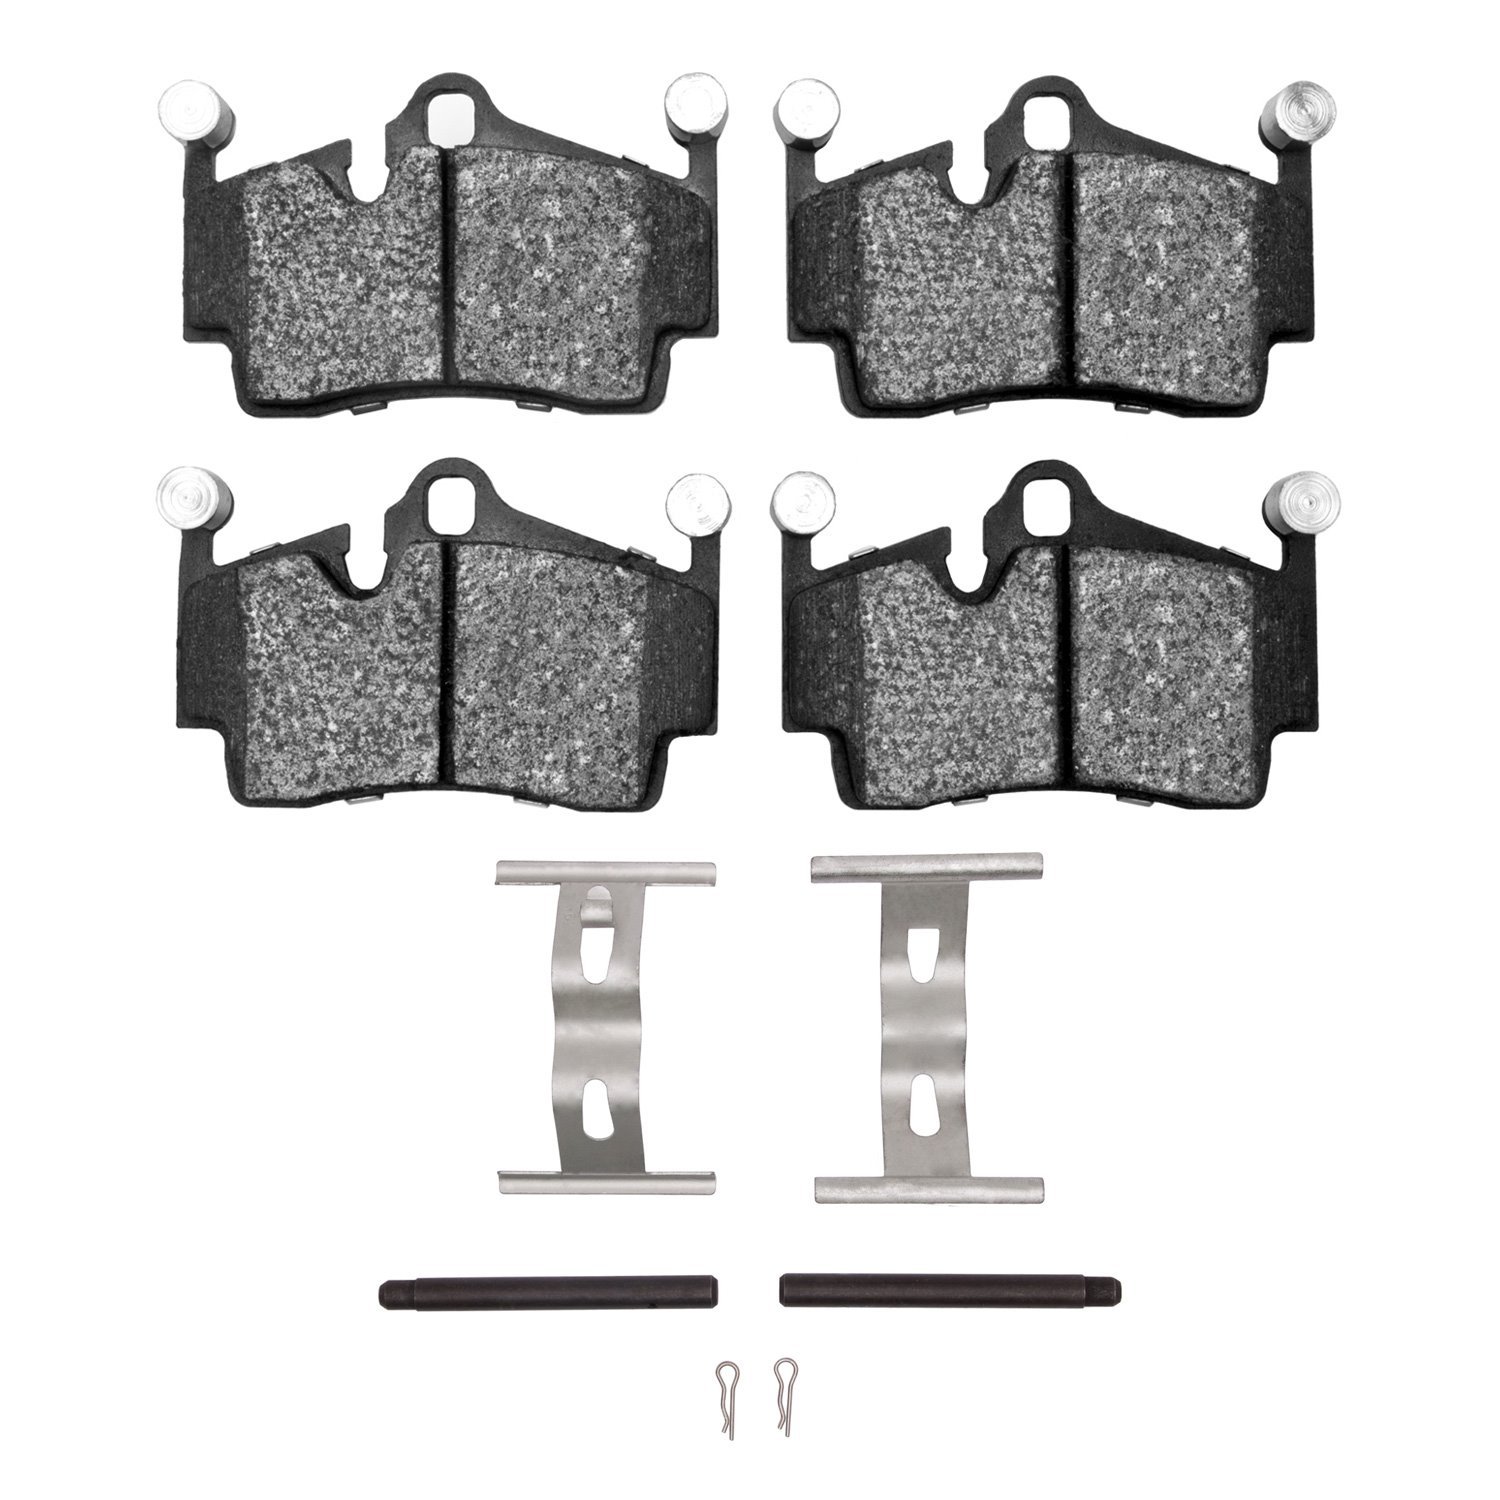 1551-1134-01 5000 Advanced Low-Metallic Brake Pads & Hardware Kit, Fits Select Porsche, Position: Rear